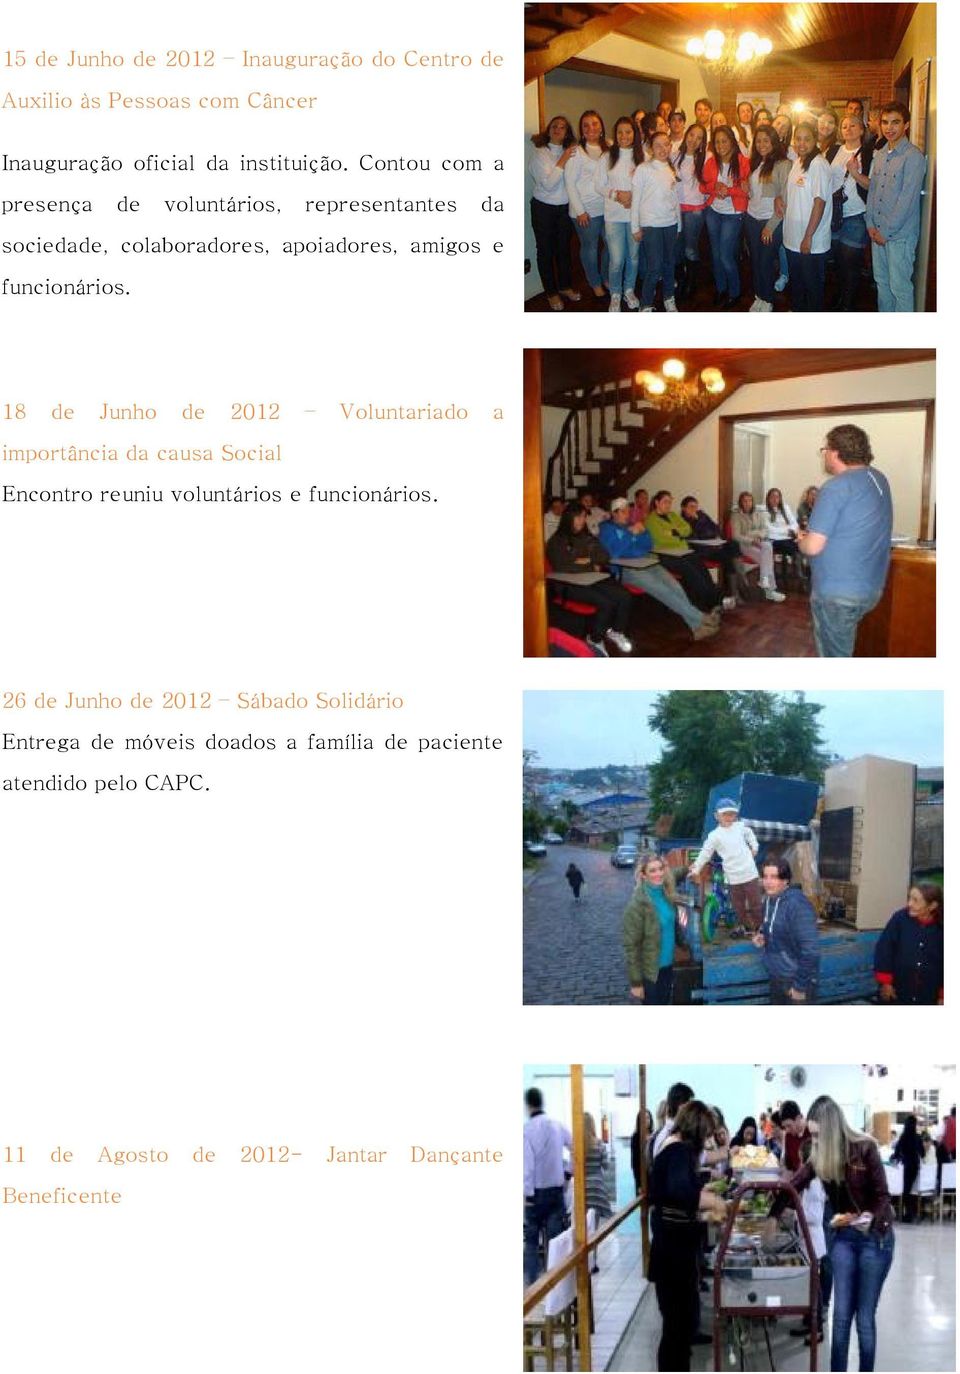 18 de Junho de 2012 Voluntariado a importância da causa Social Encontro reuniu voluntários e funcionários.